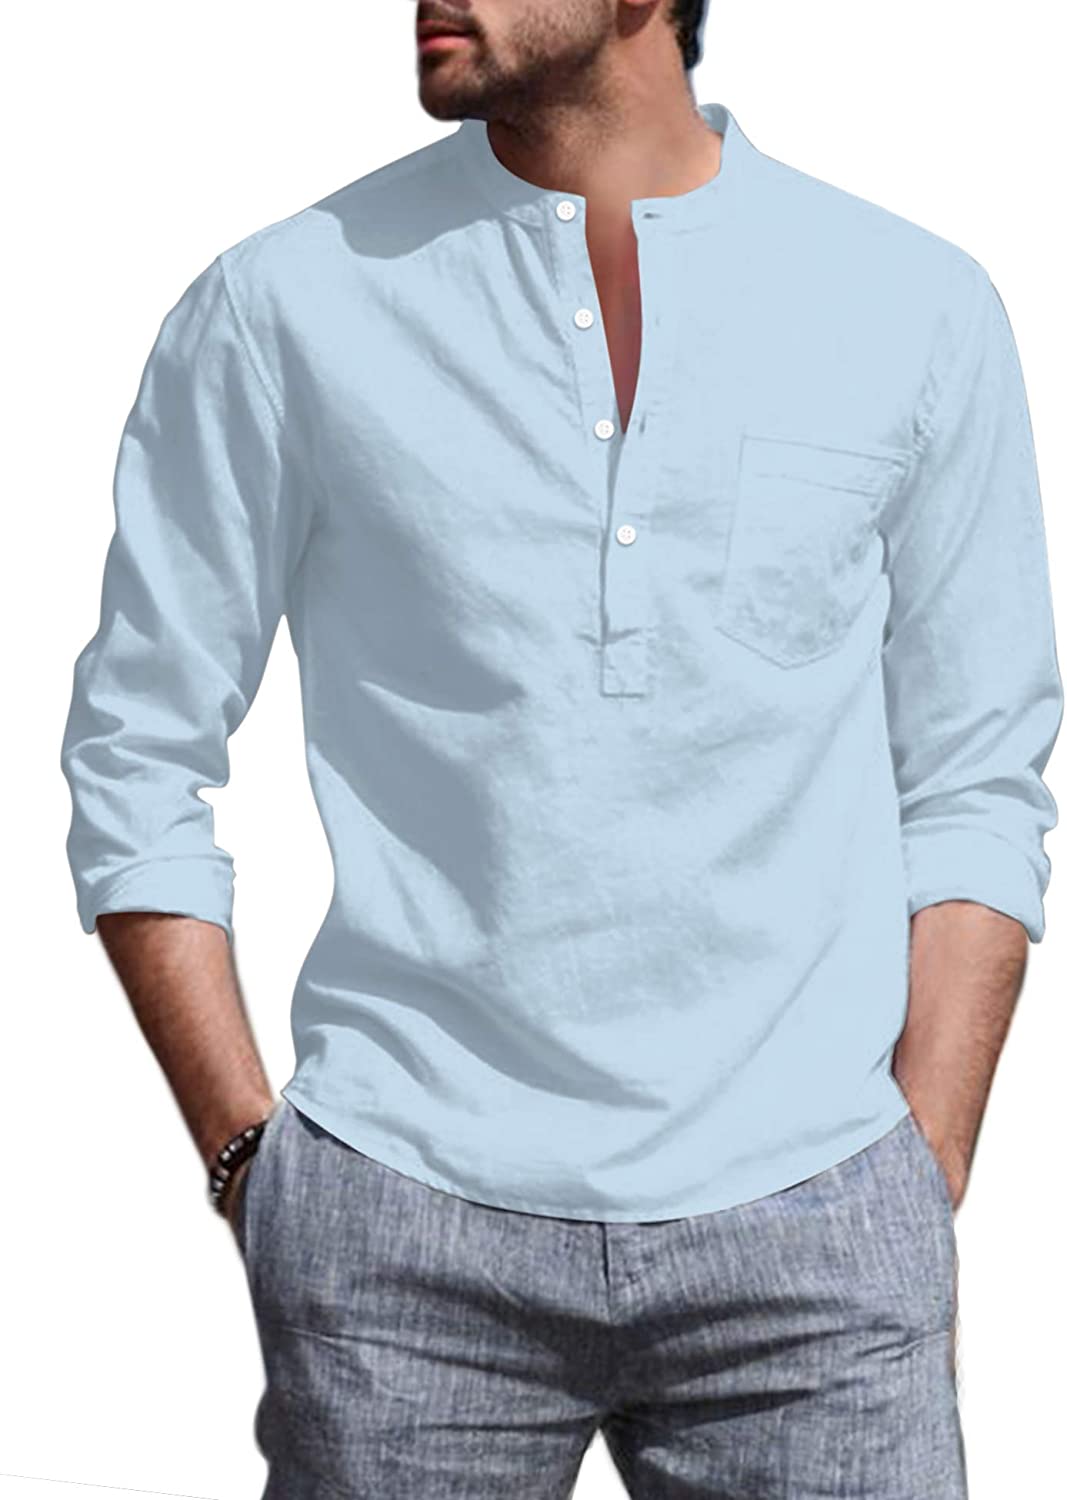 COOFANDY Mens Cotton Linen Beach Shirts Long Sleeve Casual Henley Shirt ...